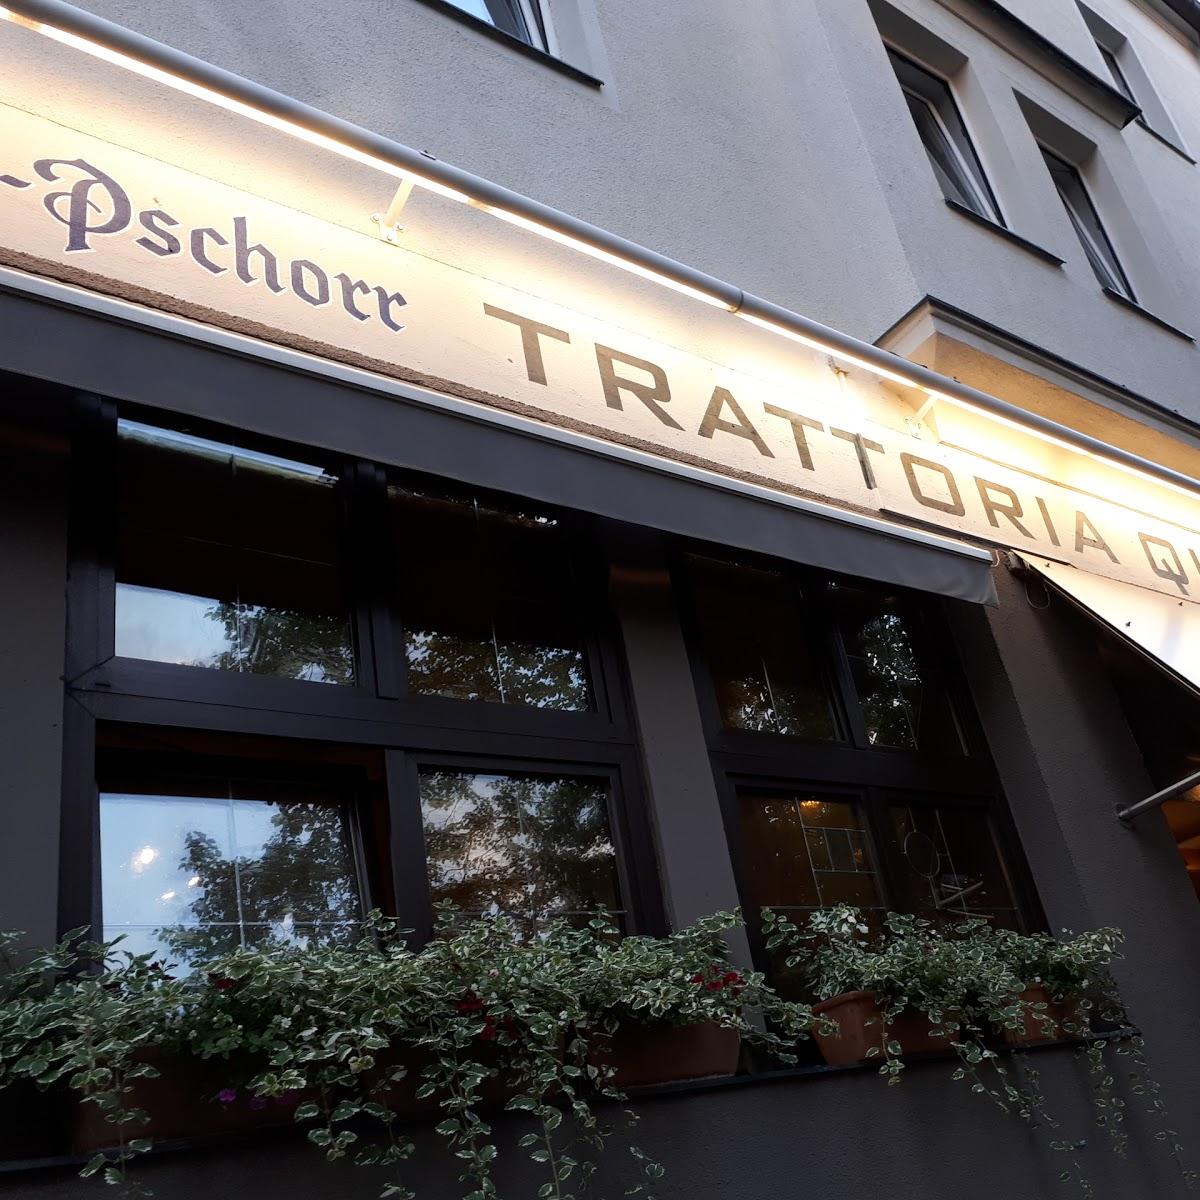 Restaurant "Traditionsgaststätte Schienhammer" in  Planegg